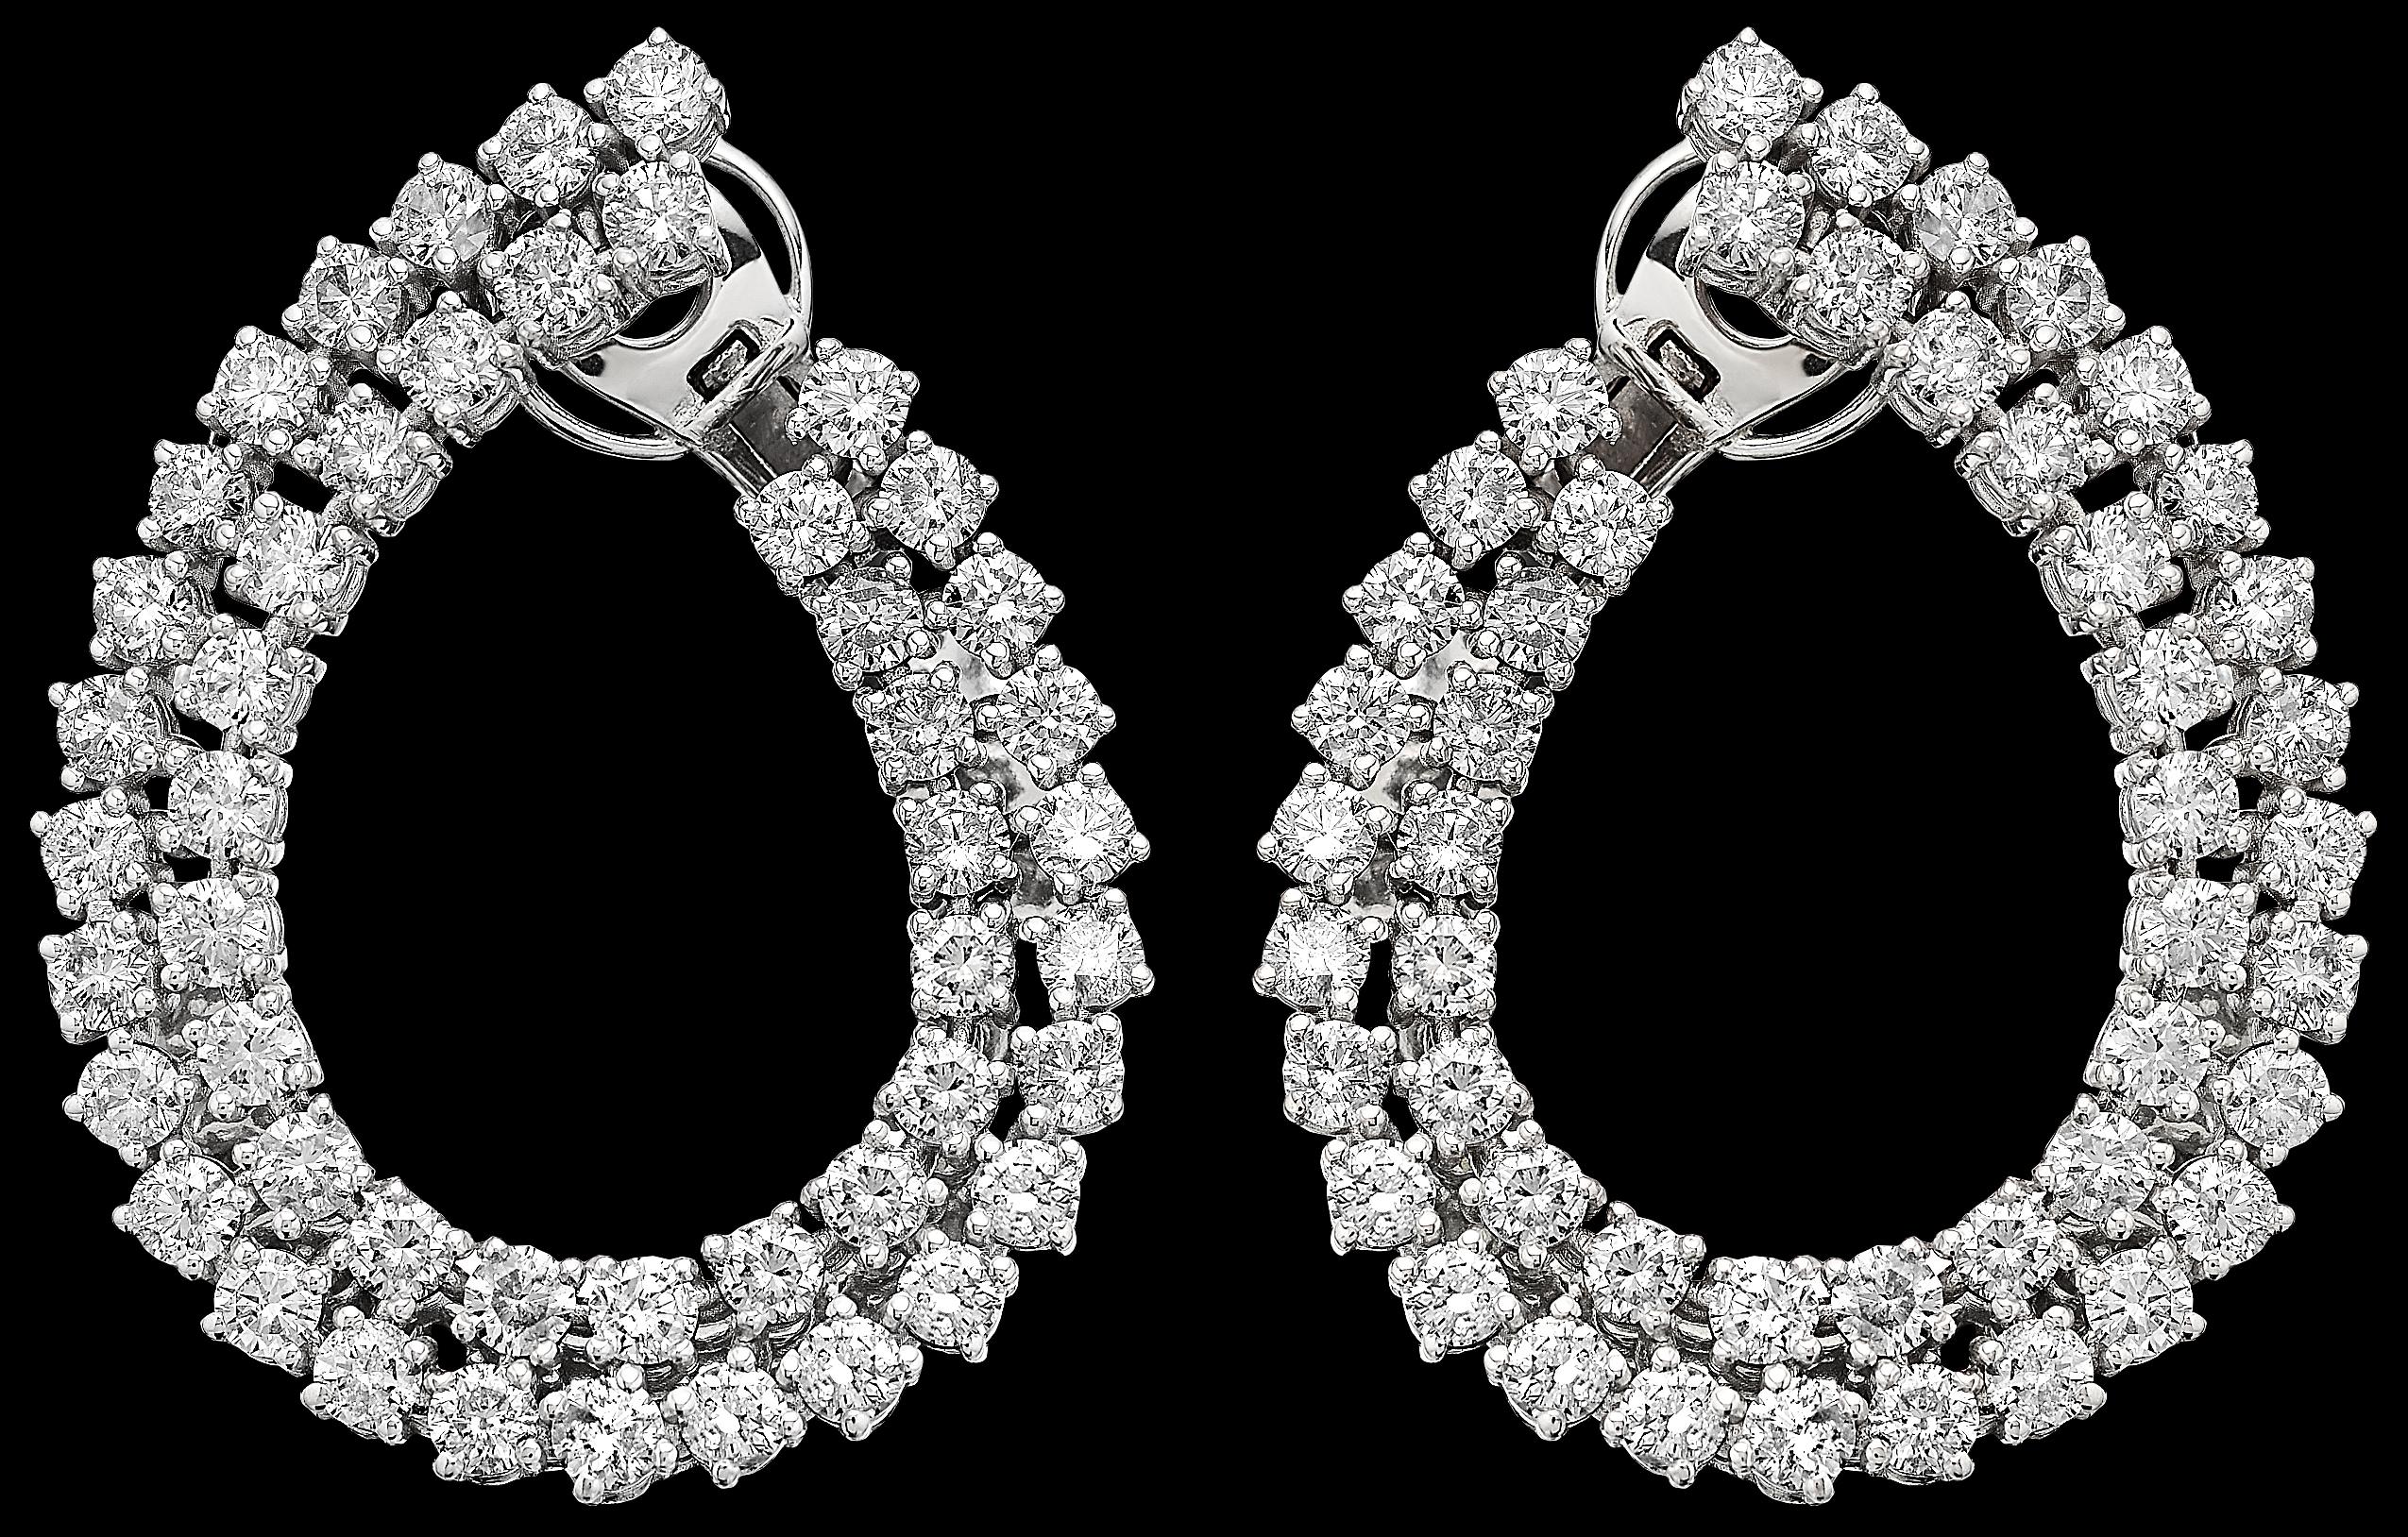 Retro Diamond Double Hoop Earrings, in 18K White Gold, Oval, Easy to Wear Fittings